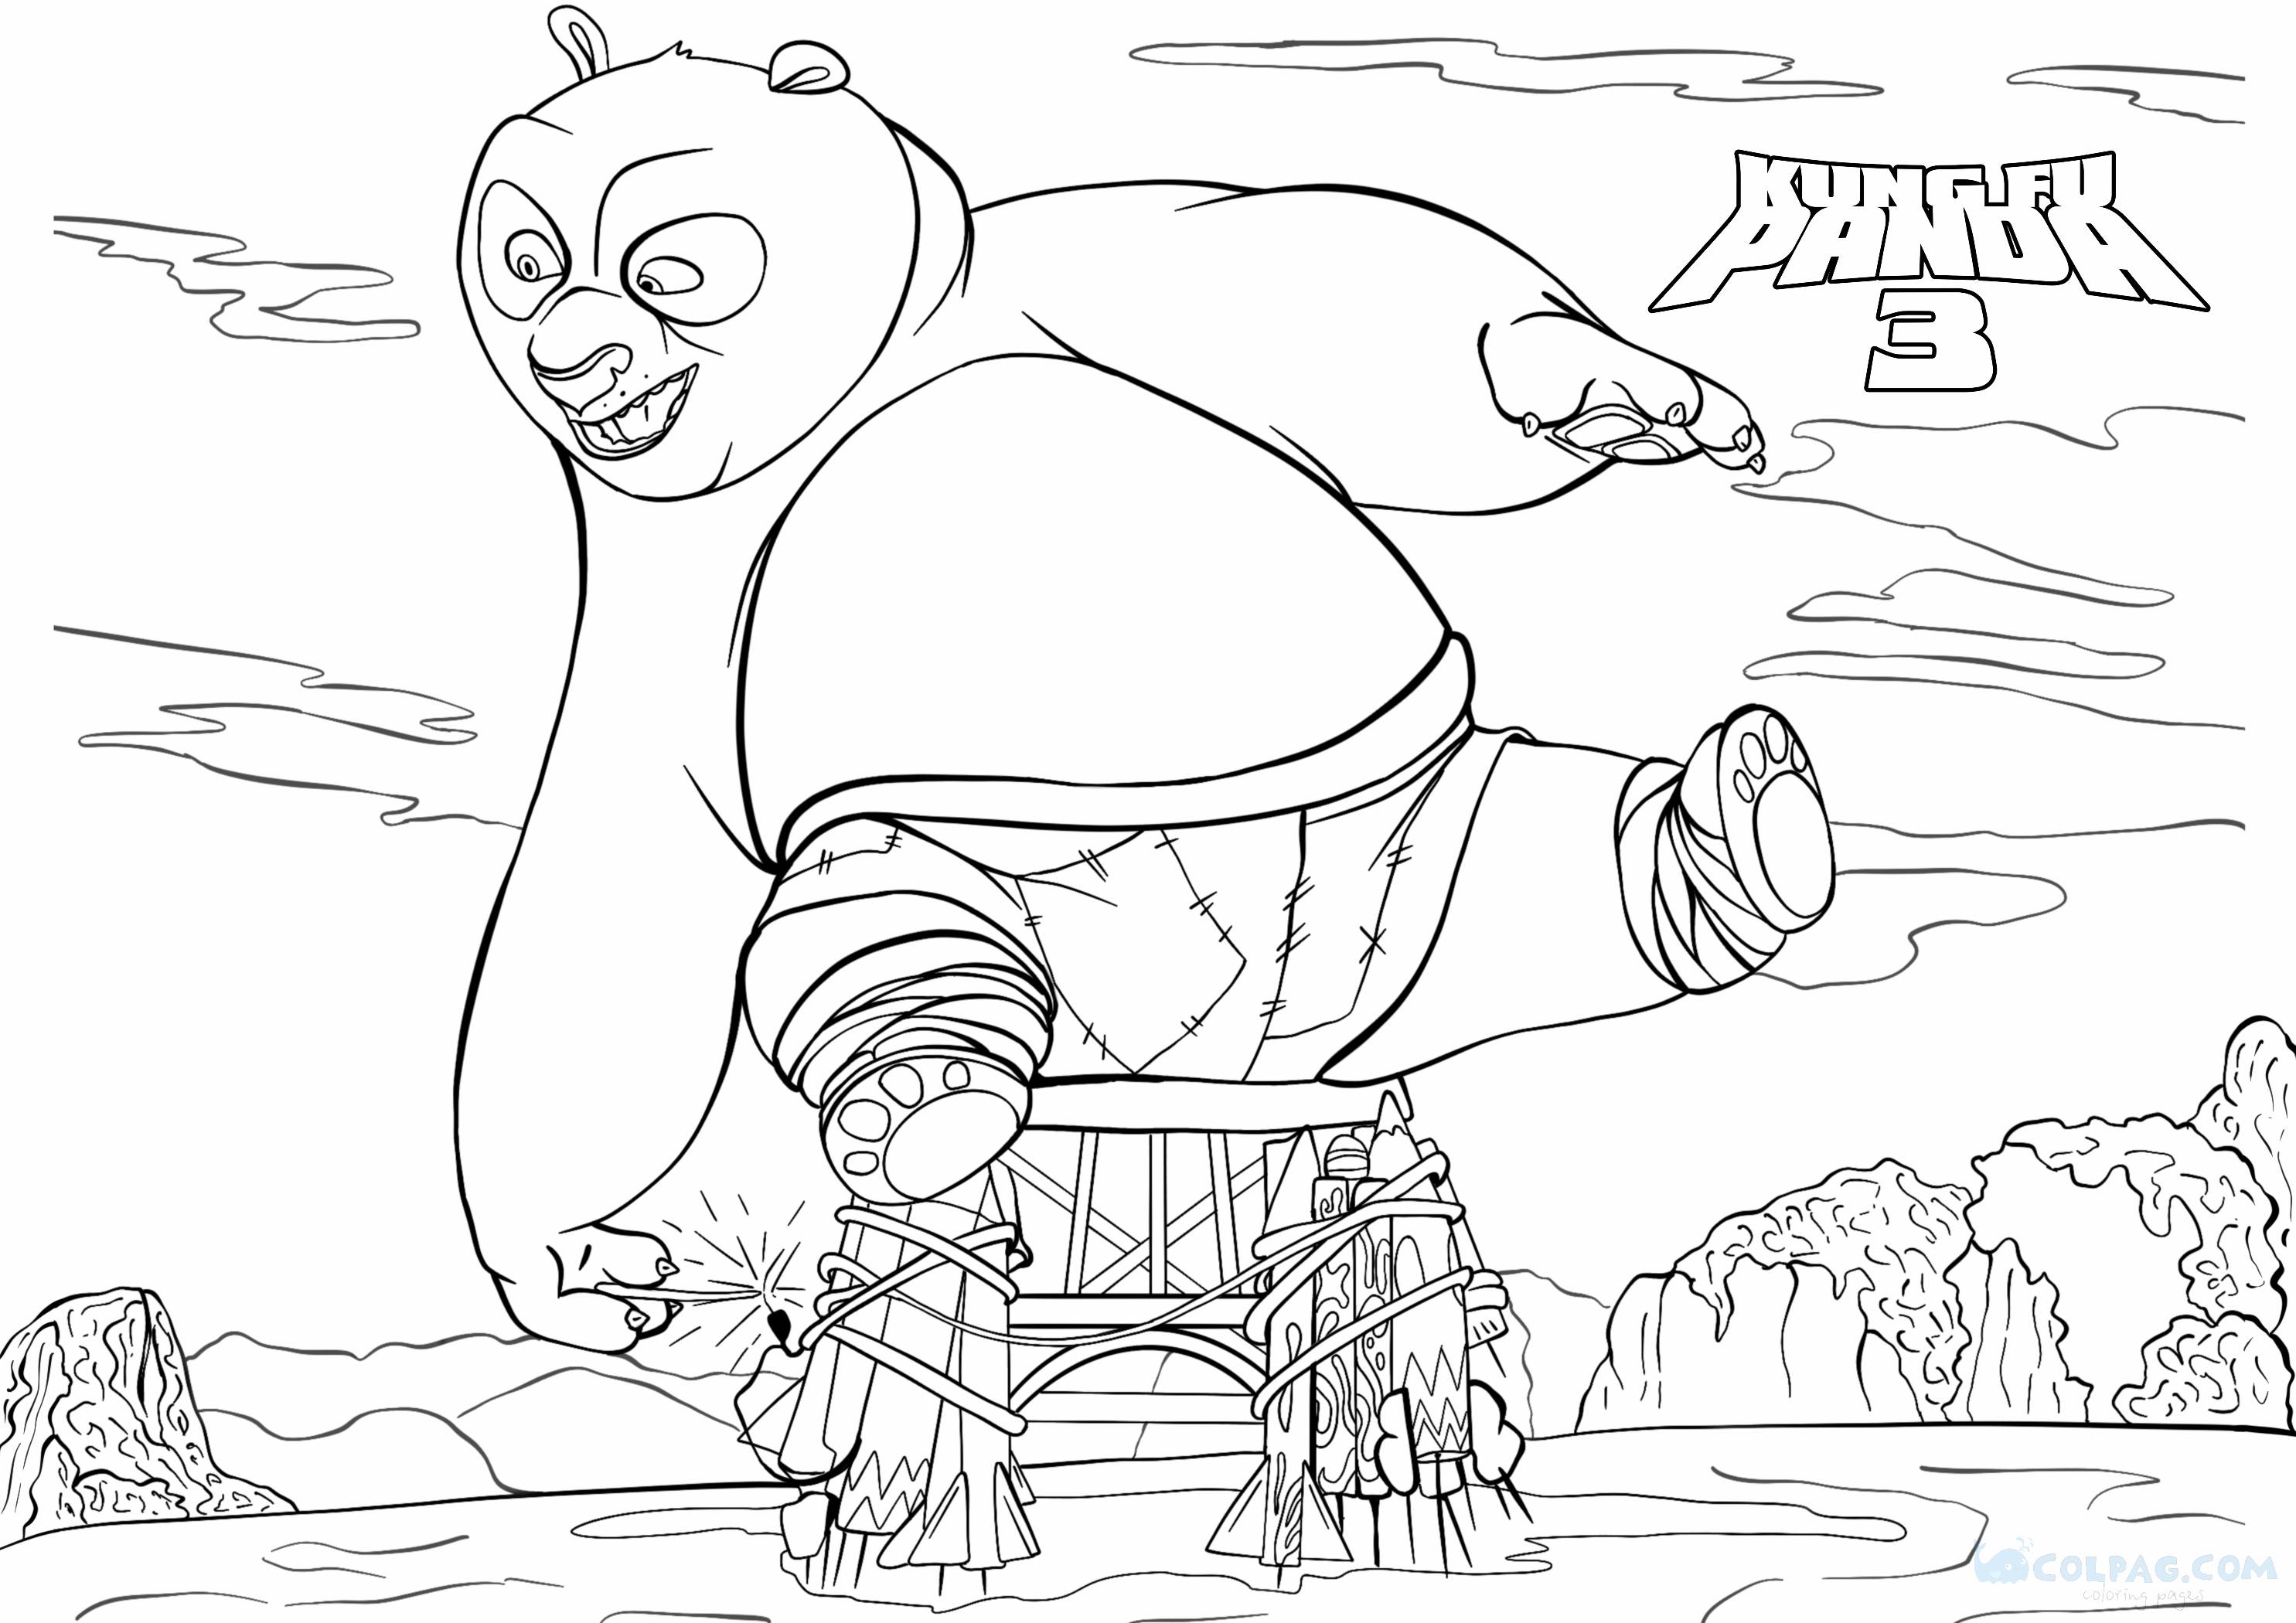 Disegni da colorare di Kung Fu Panda 3